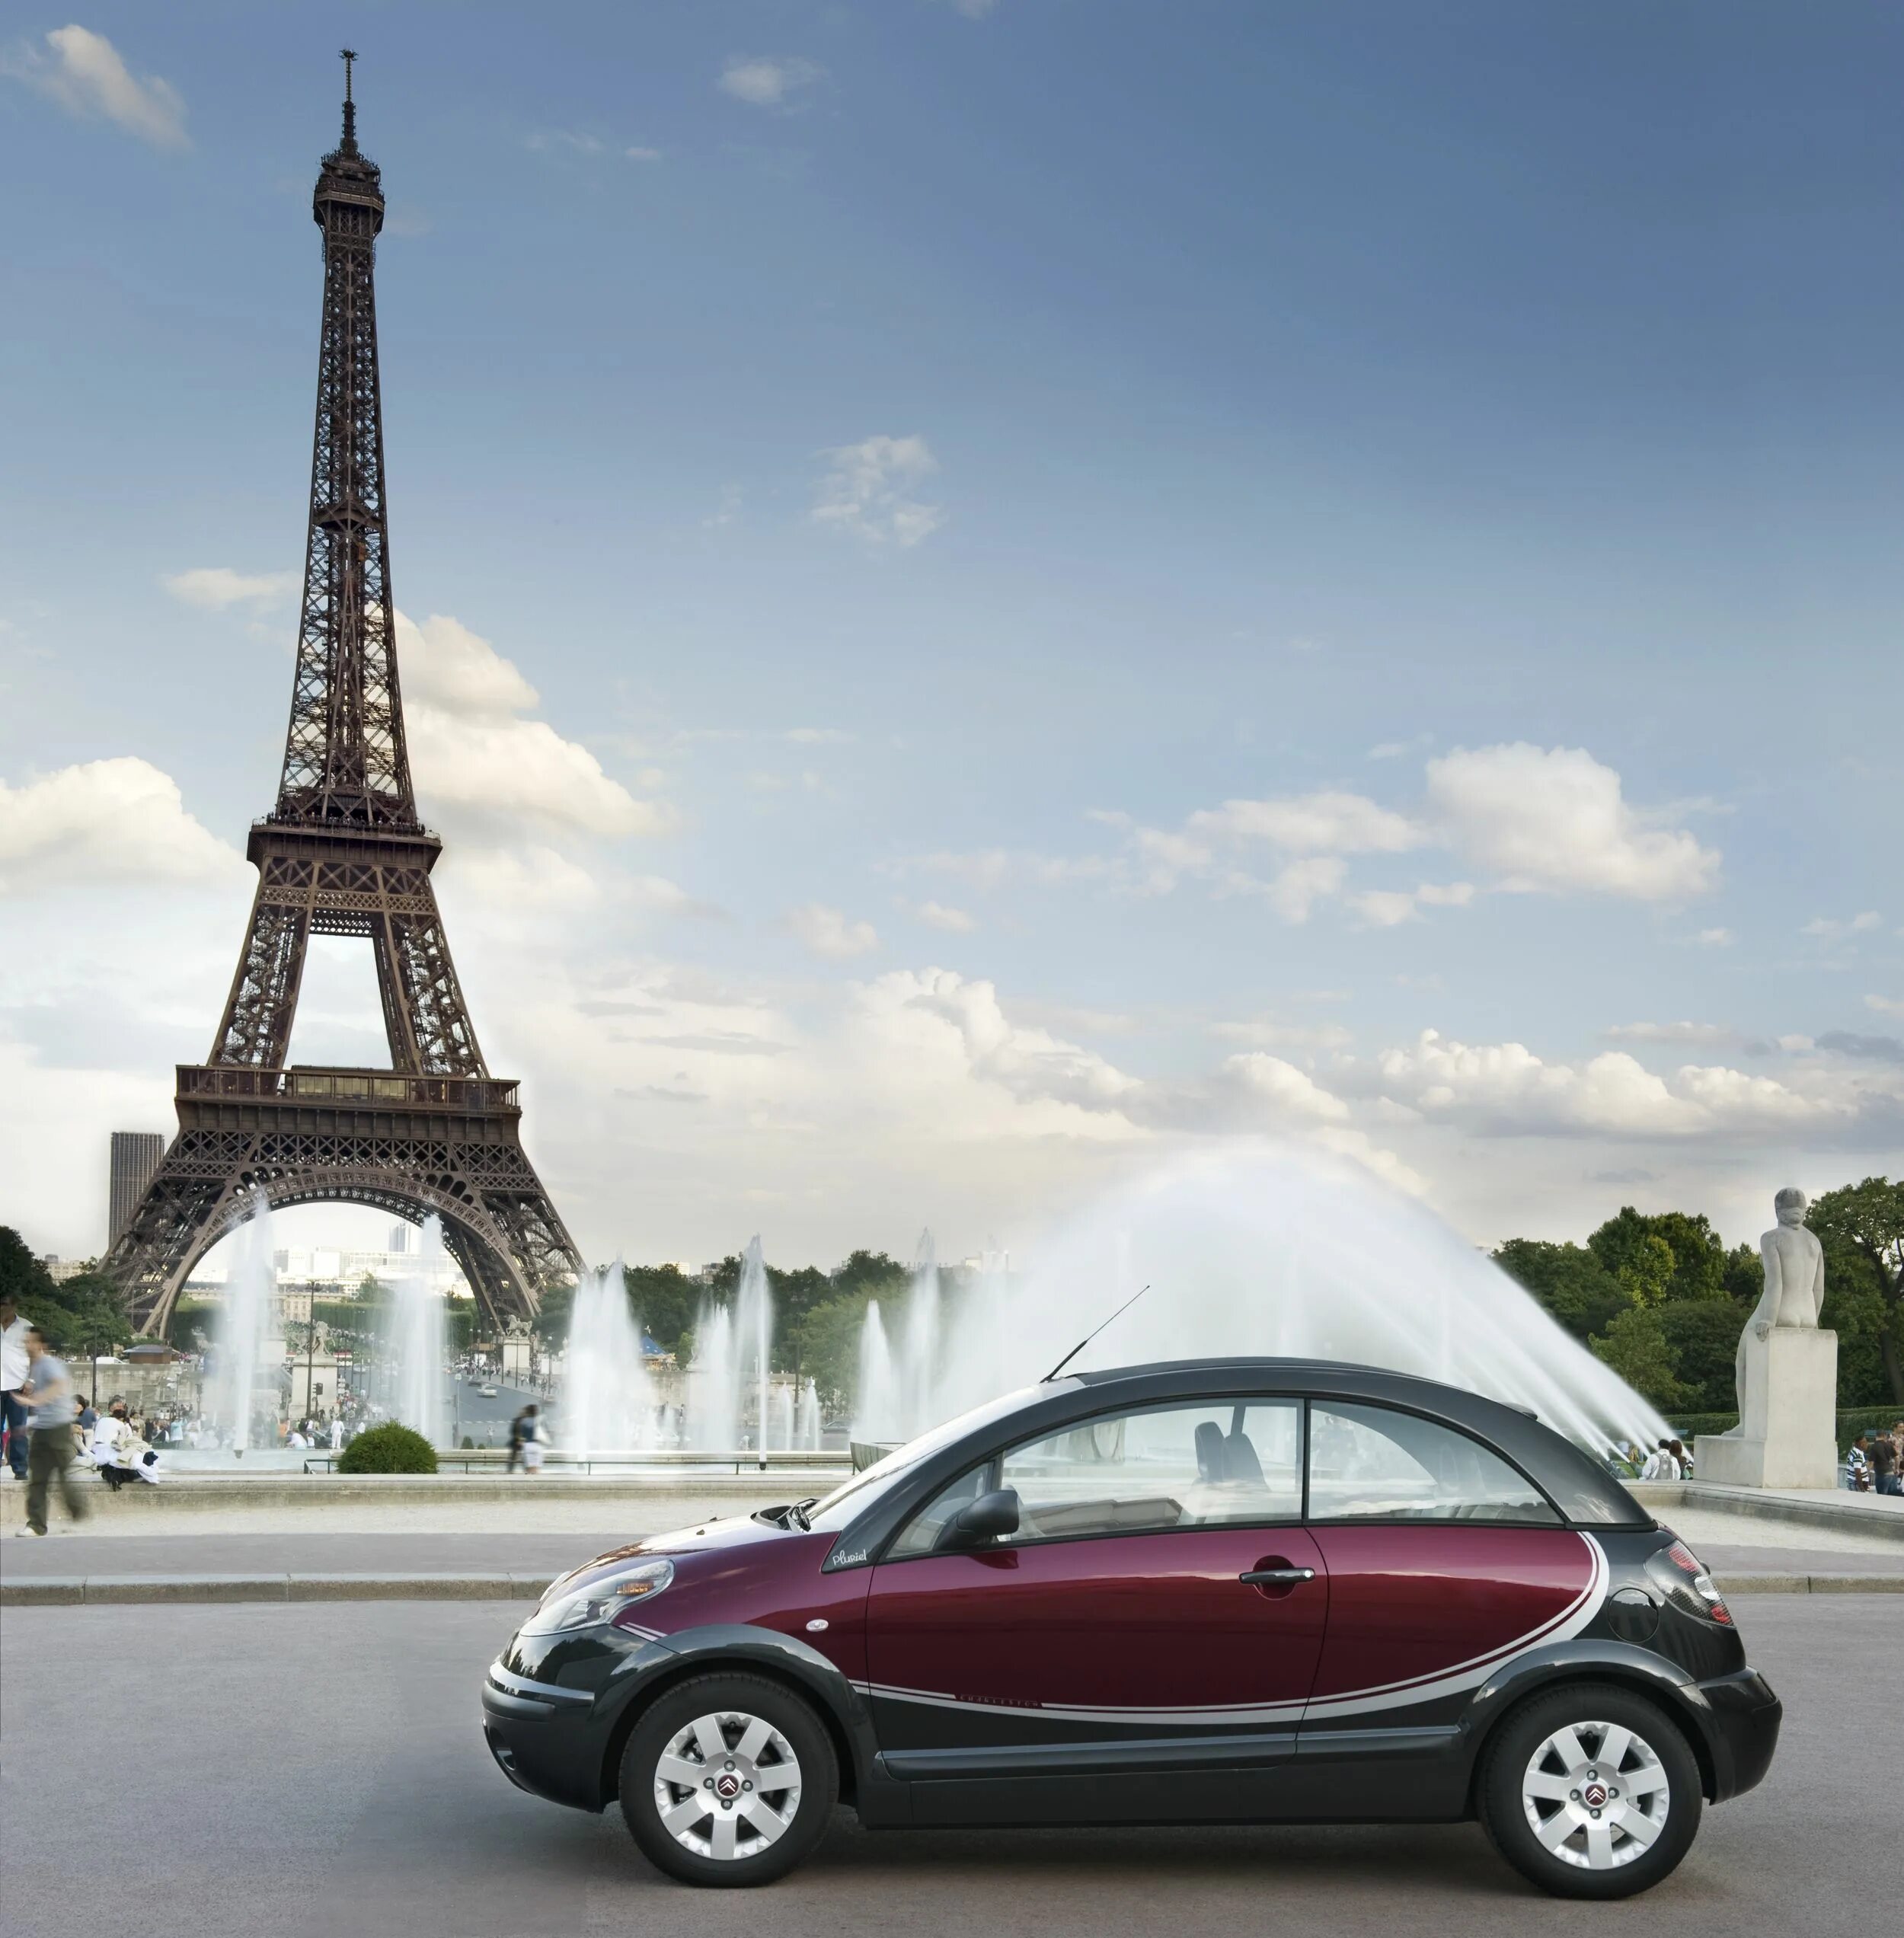 Француз авто. Пежо Ситроен Франция. Ситроен в Париже. Французские авто. Машины в Париже.